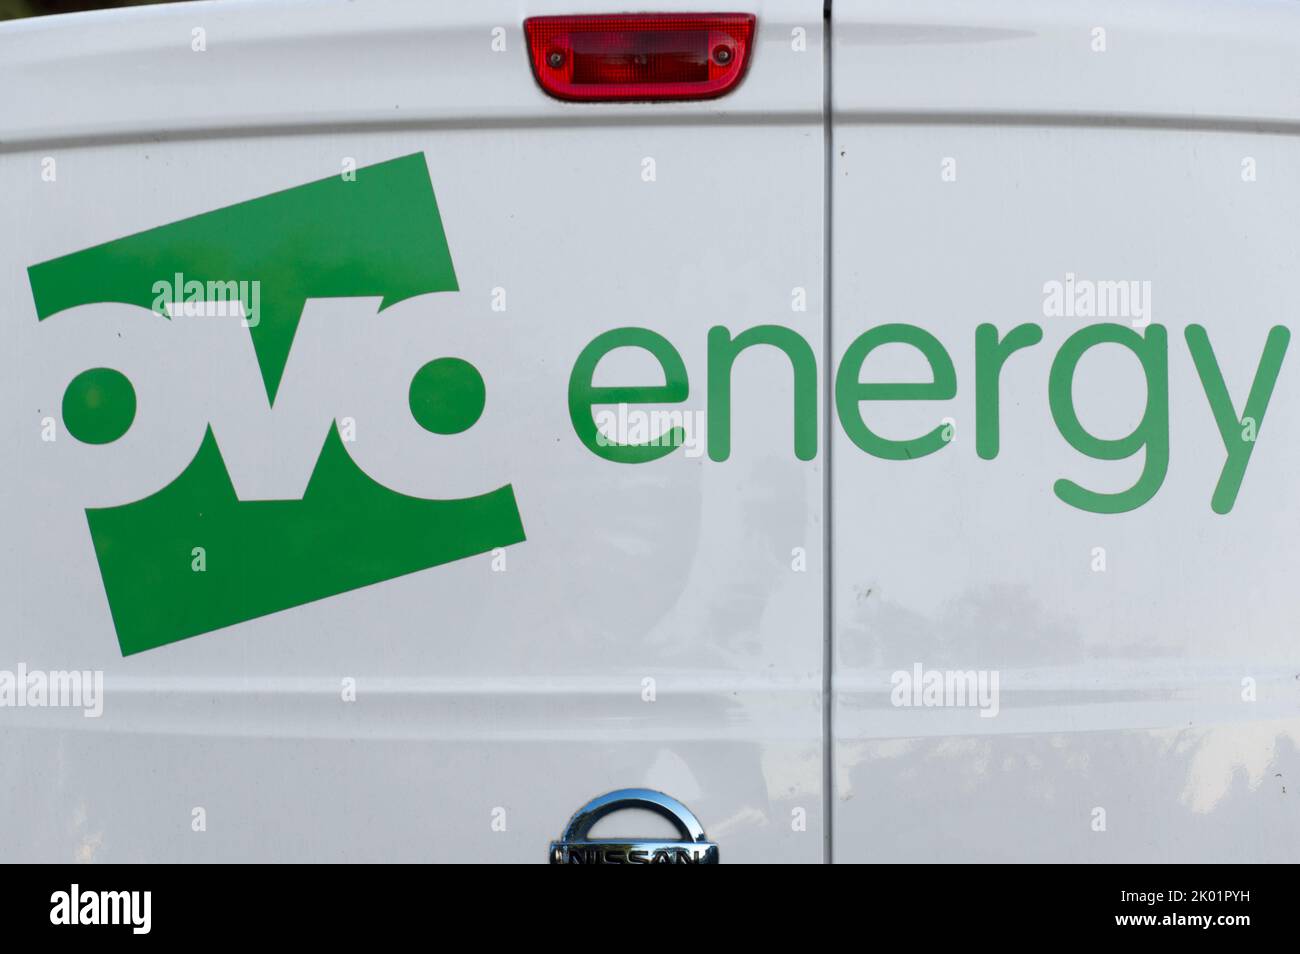 Logotipo de Ovo Energy en una furgoneta de soporte Foto de stock